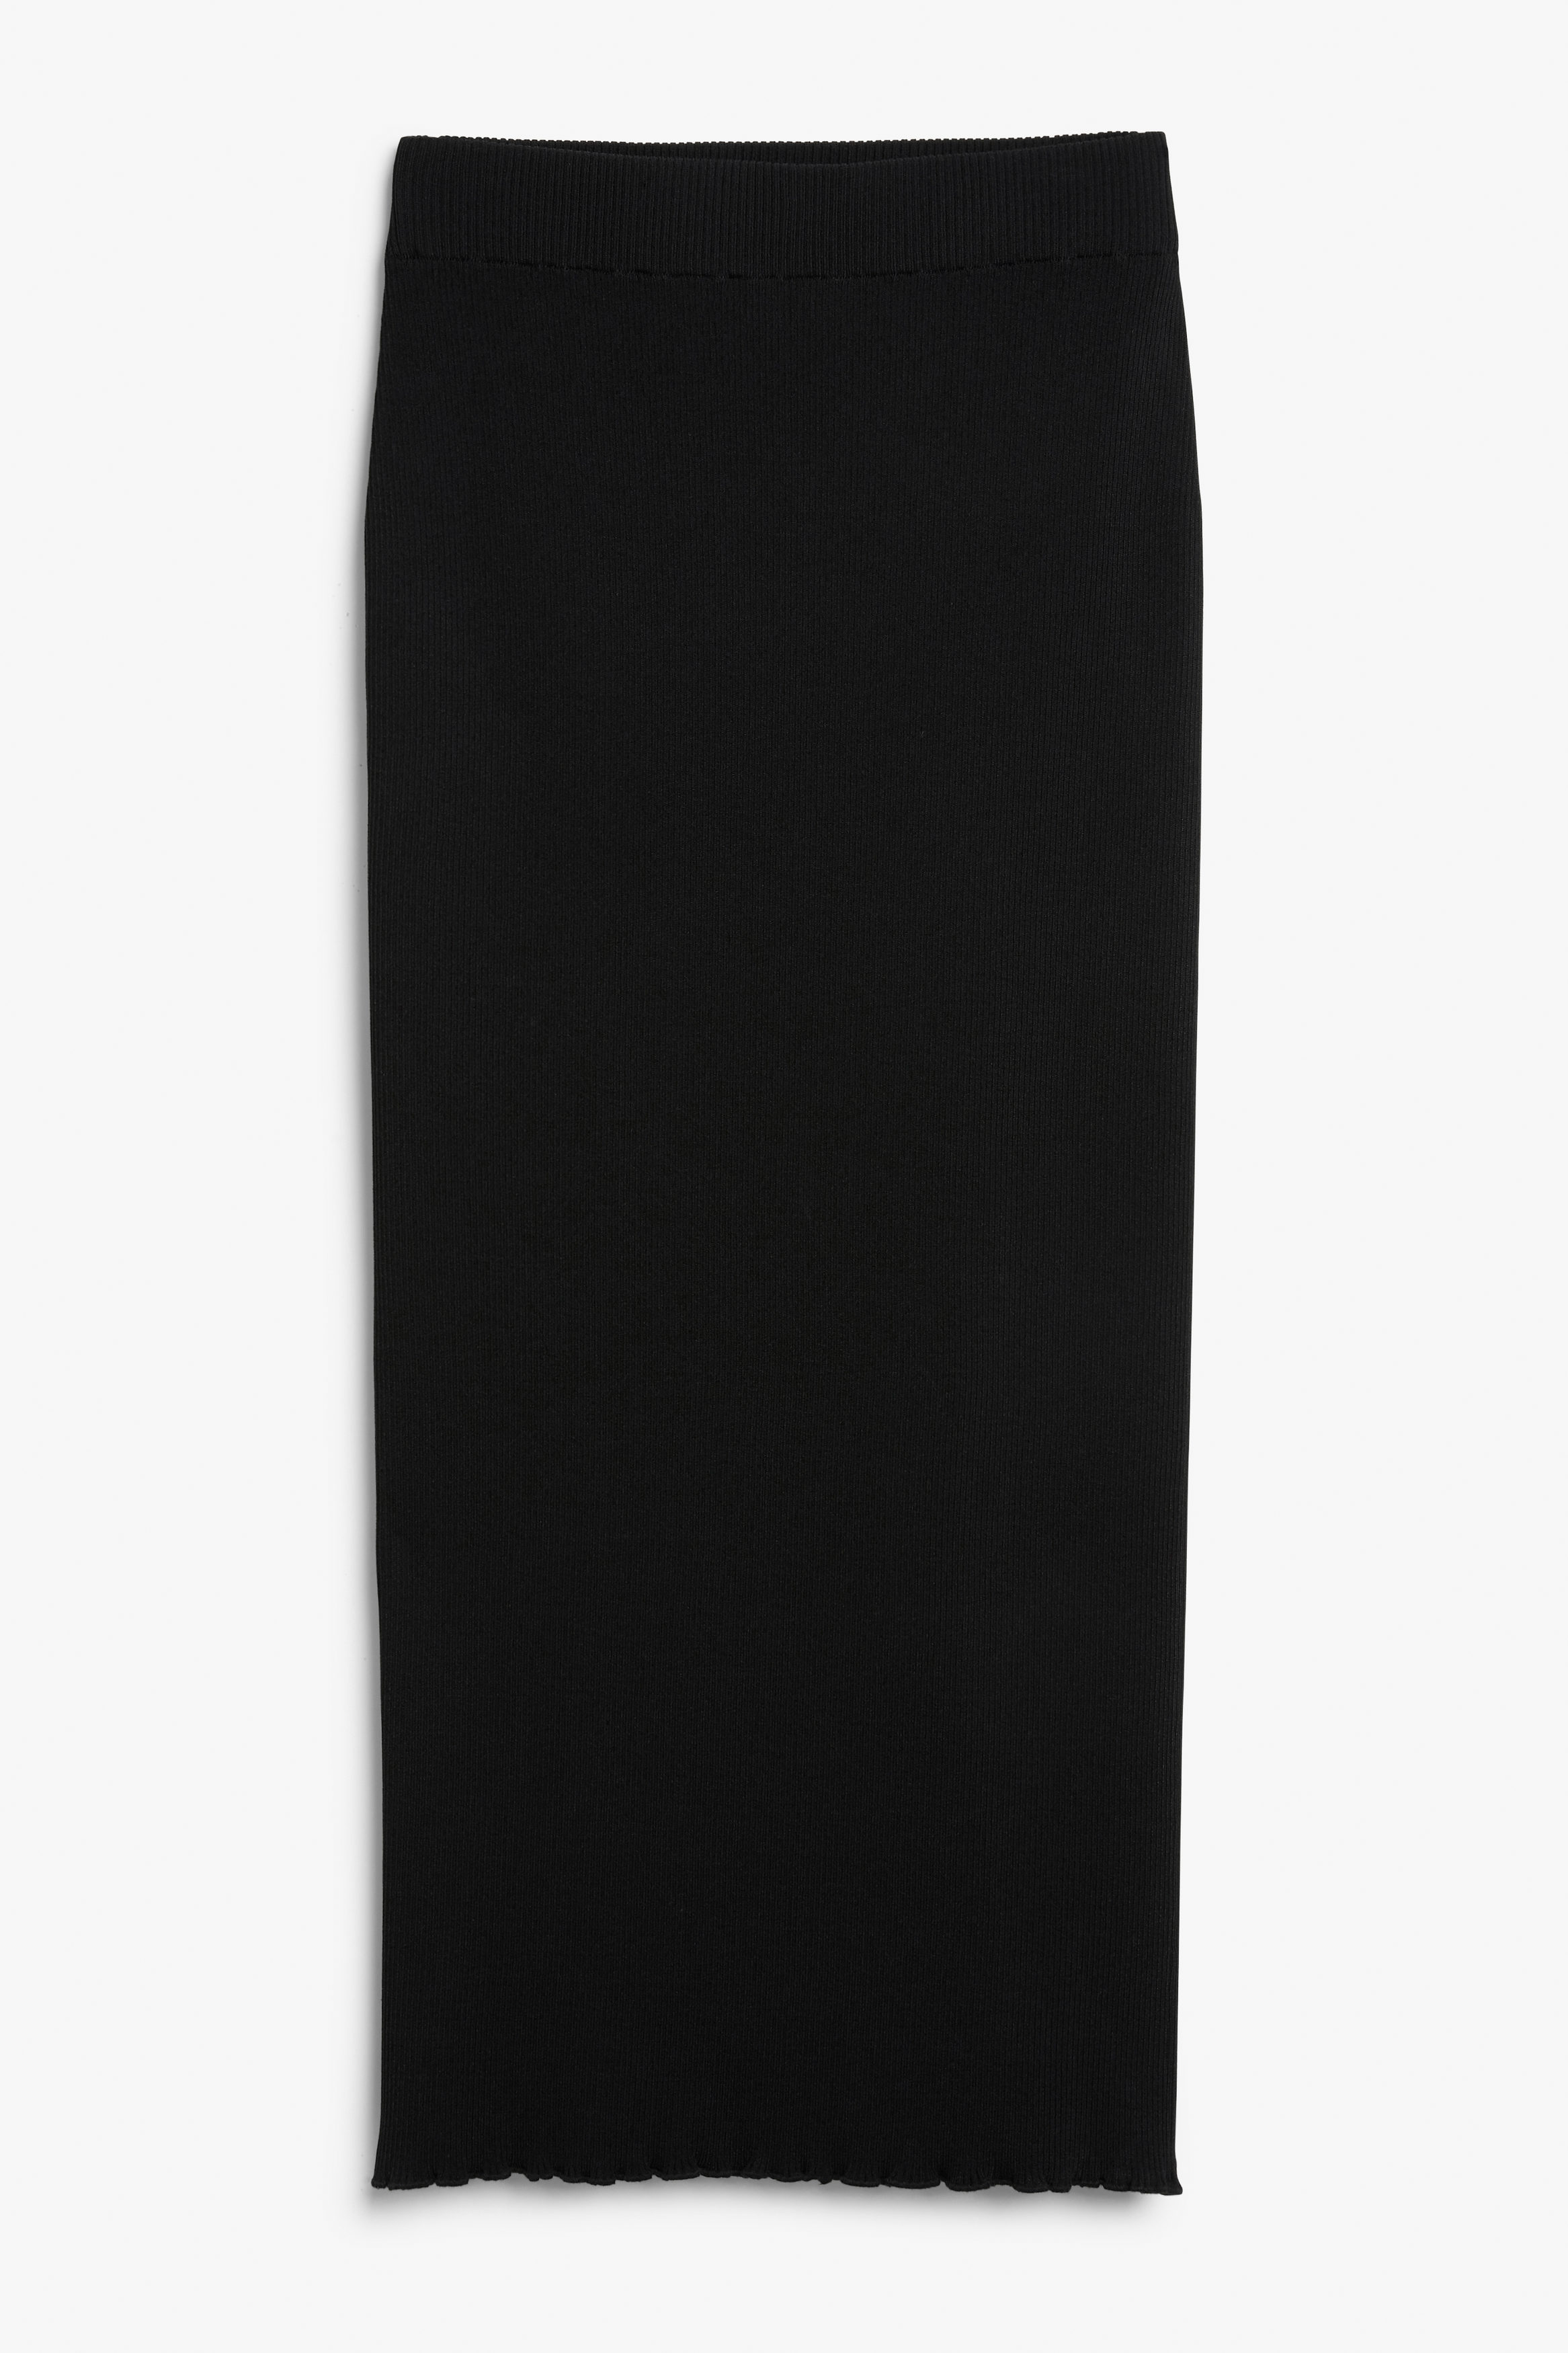 Billede af Monki Sort Nederdel I Rib Med Bølgekant, Nederdele. Farve: Black størrelse XS